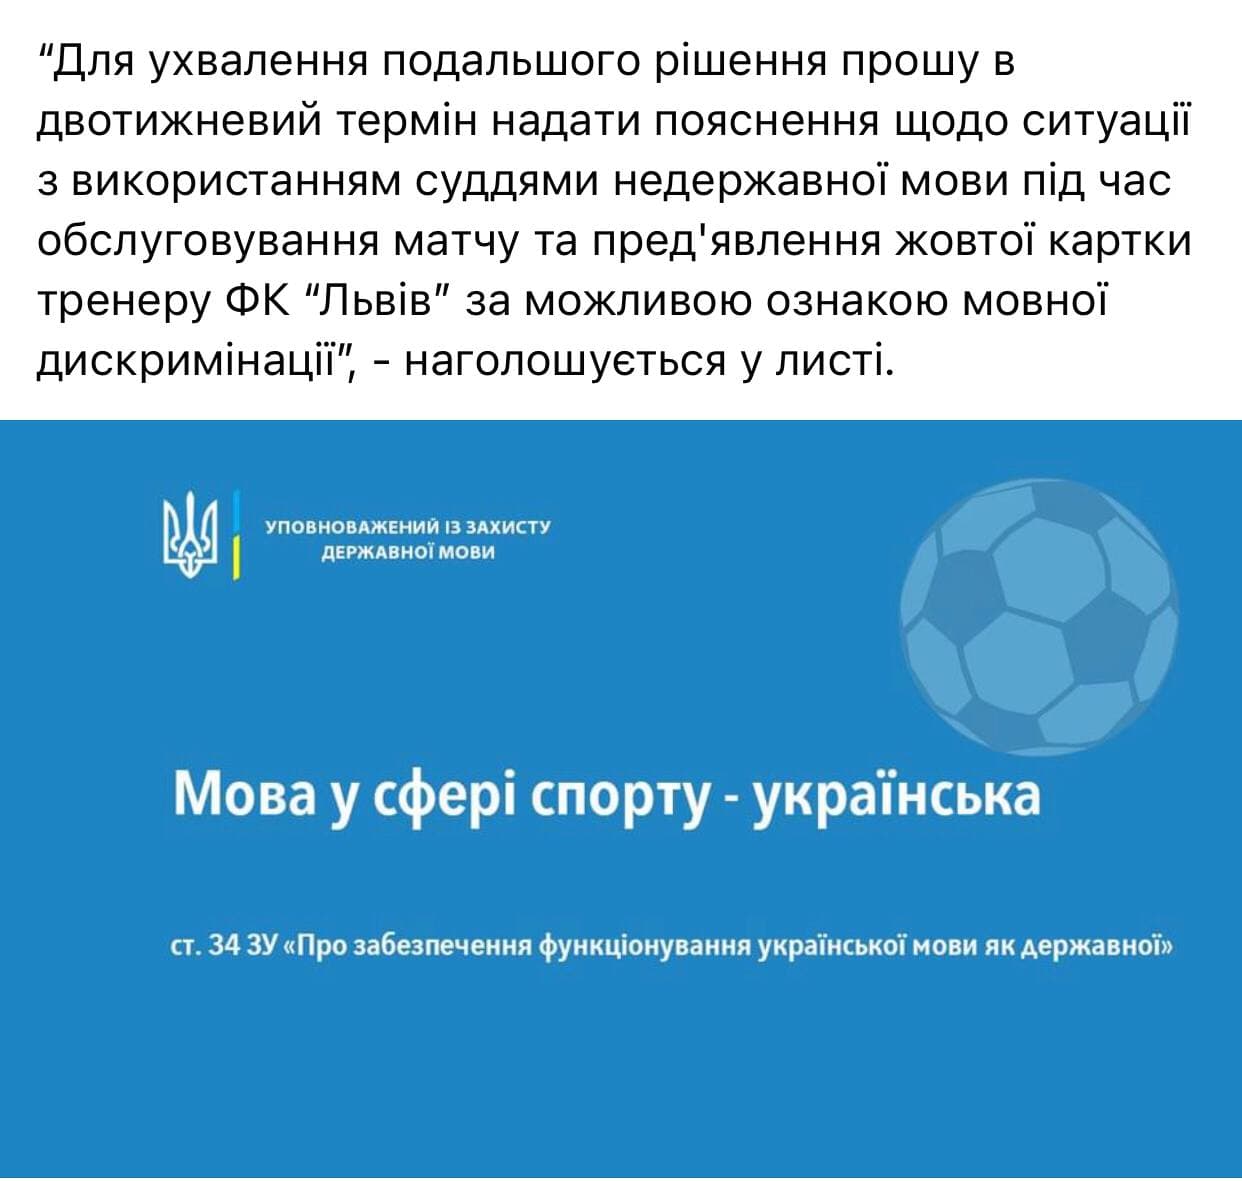 Языковой скандал в футболе – за наказанного тренера вступился омбудсмен. Источник: Facebook